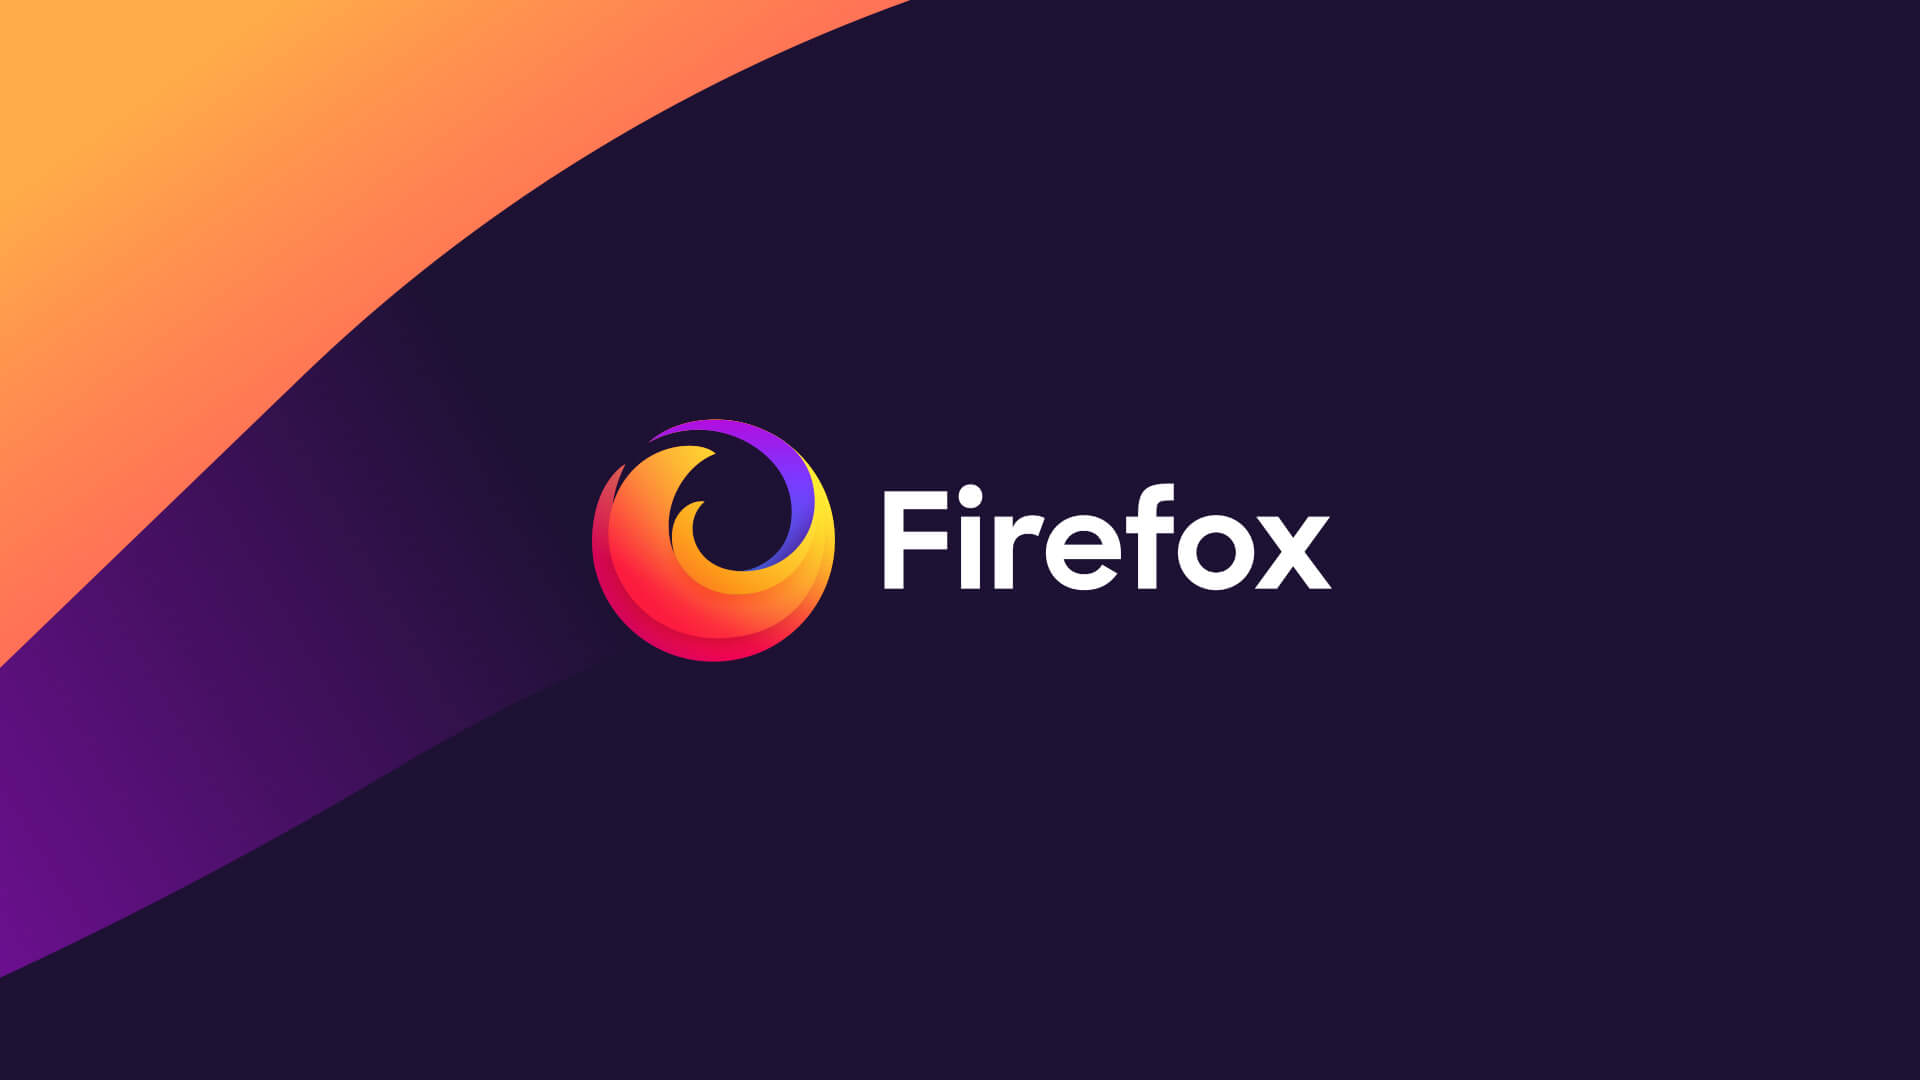 Firefoxが無料でも儲かる仕組み